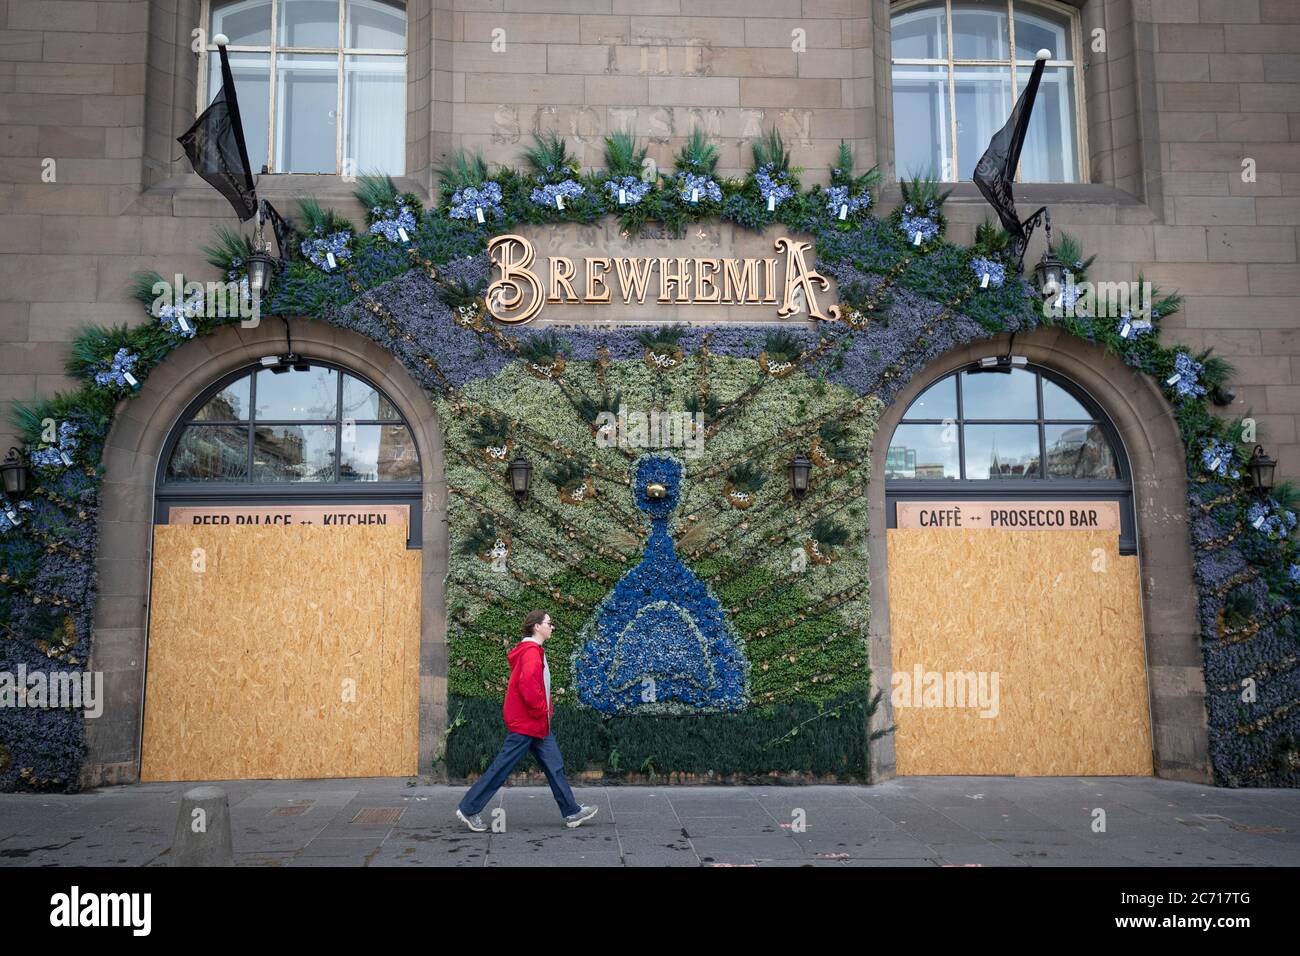 El restaurante y bar Brewhemia en Market Street, Edimburgo, antes de reabrir el 15 de julio, mientras Escocia se prepara para el levantamiento de nuevas restricciones de bloqueo coronavirus. Foto de stock